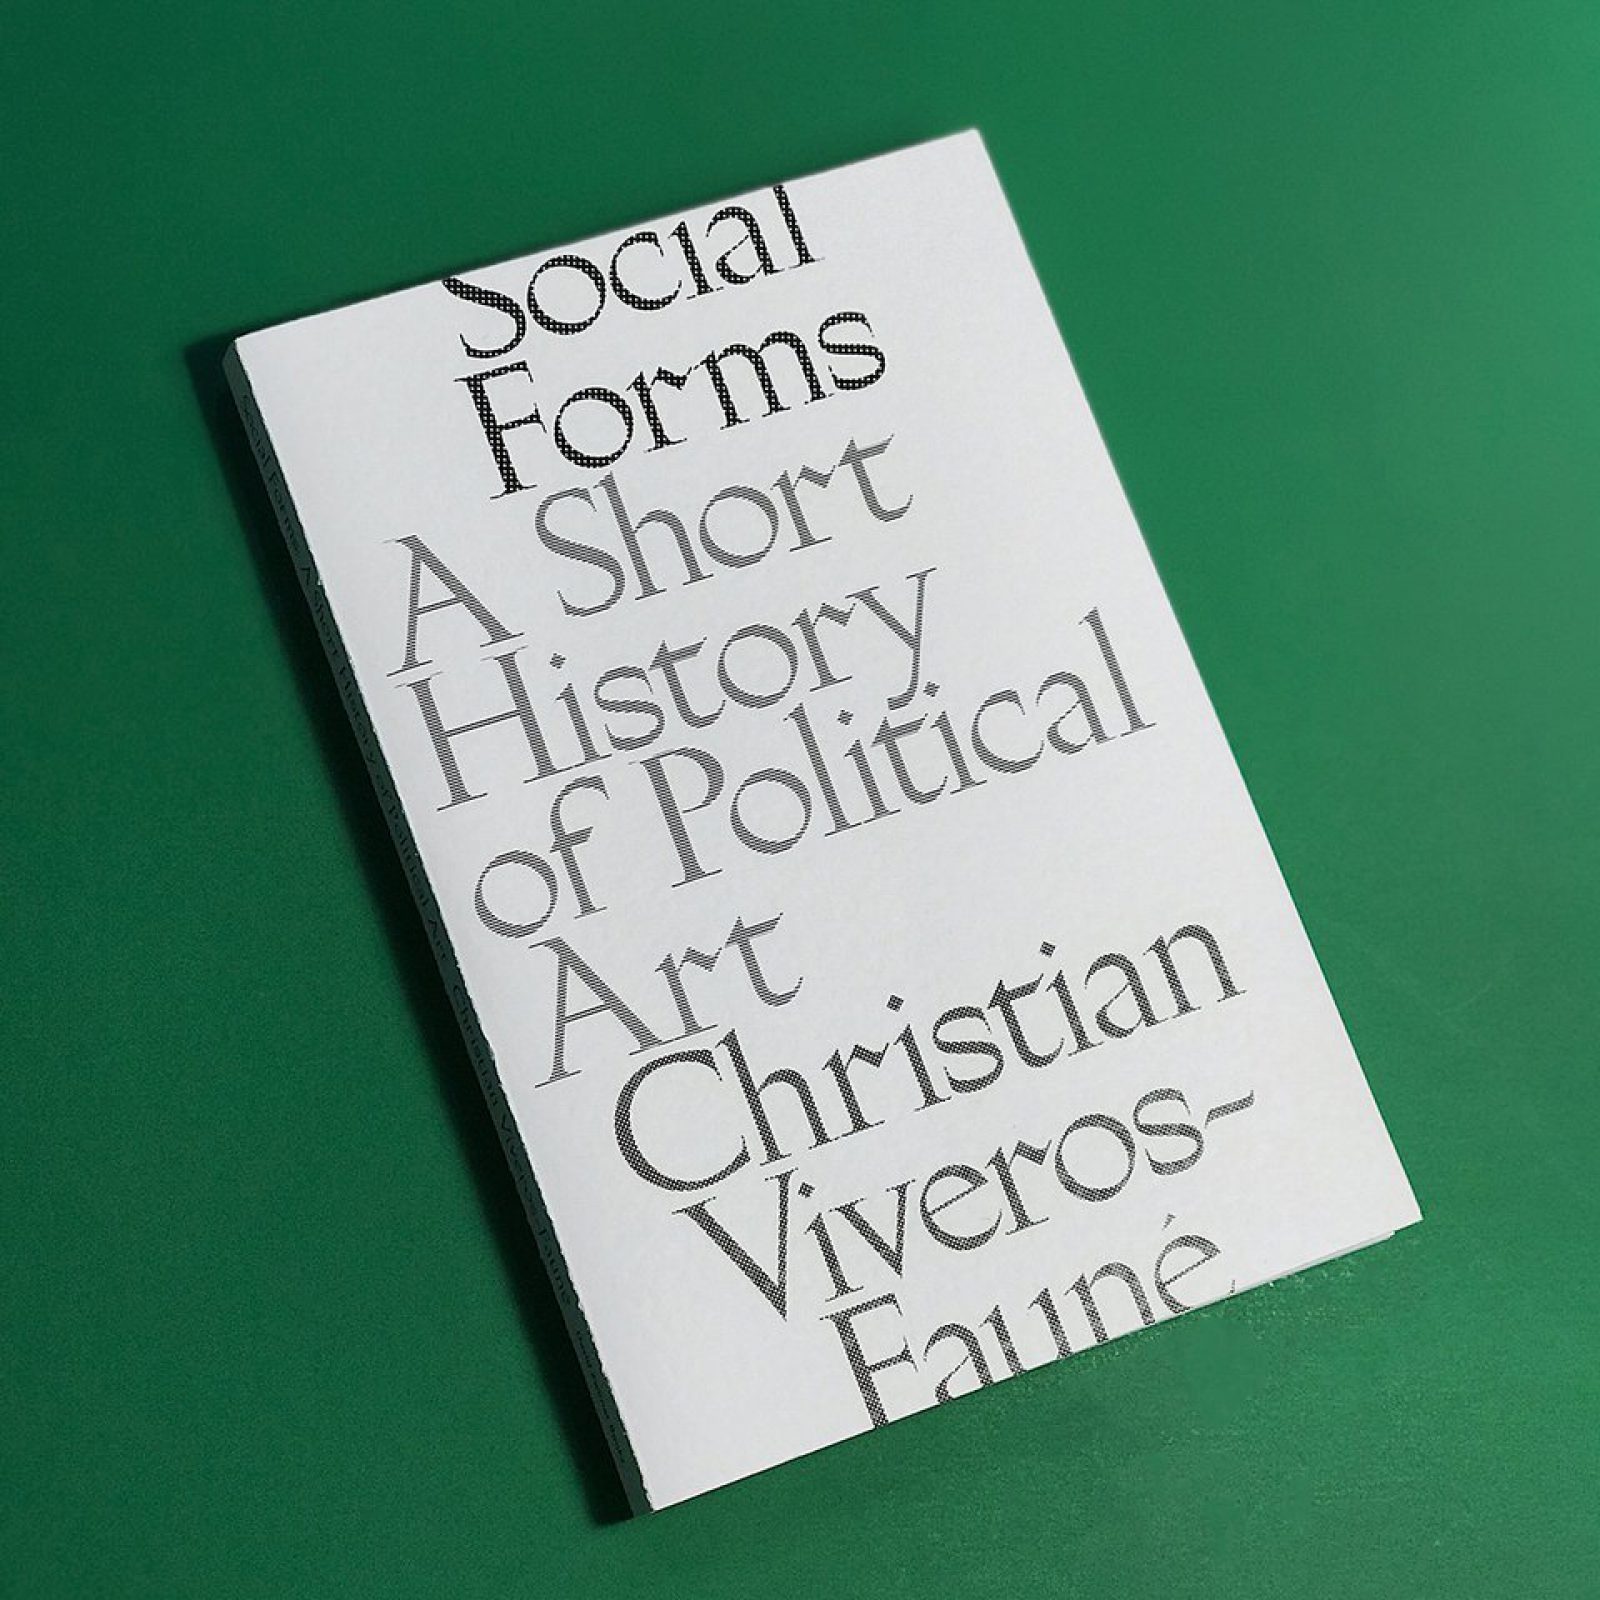 Social Forms: A Short History of Political Art Editado por David Zwirner Books 2018 Tapa blanda | 20.3 × 26.7 cm | 128 páginas | 50 reproducciones a color ISBN: 978-1-941701-90-4 $29.95